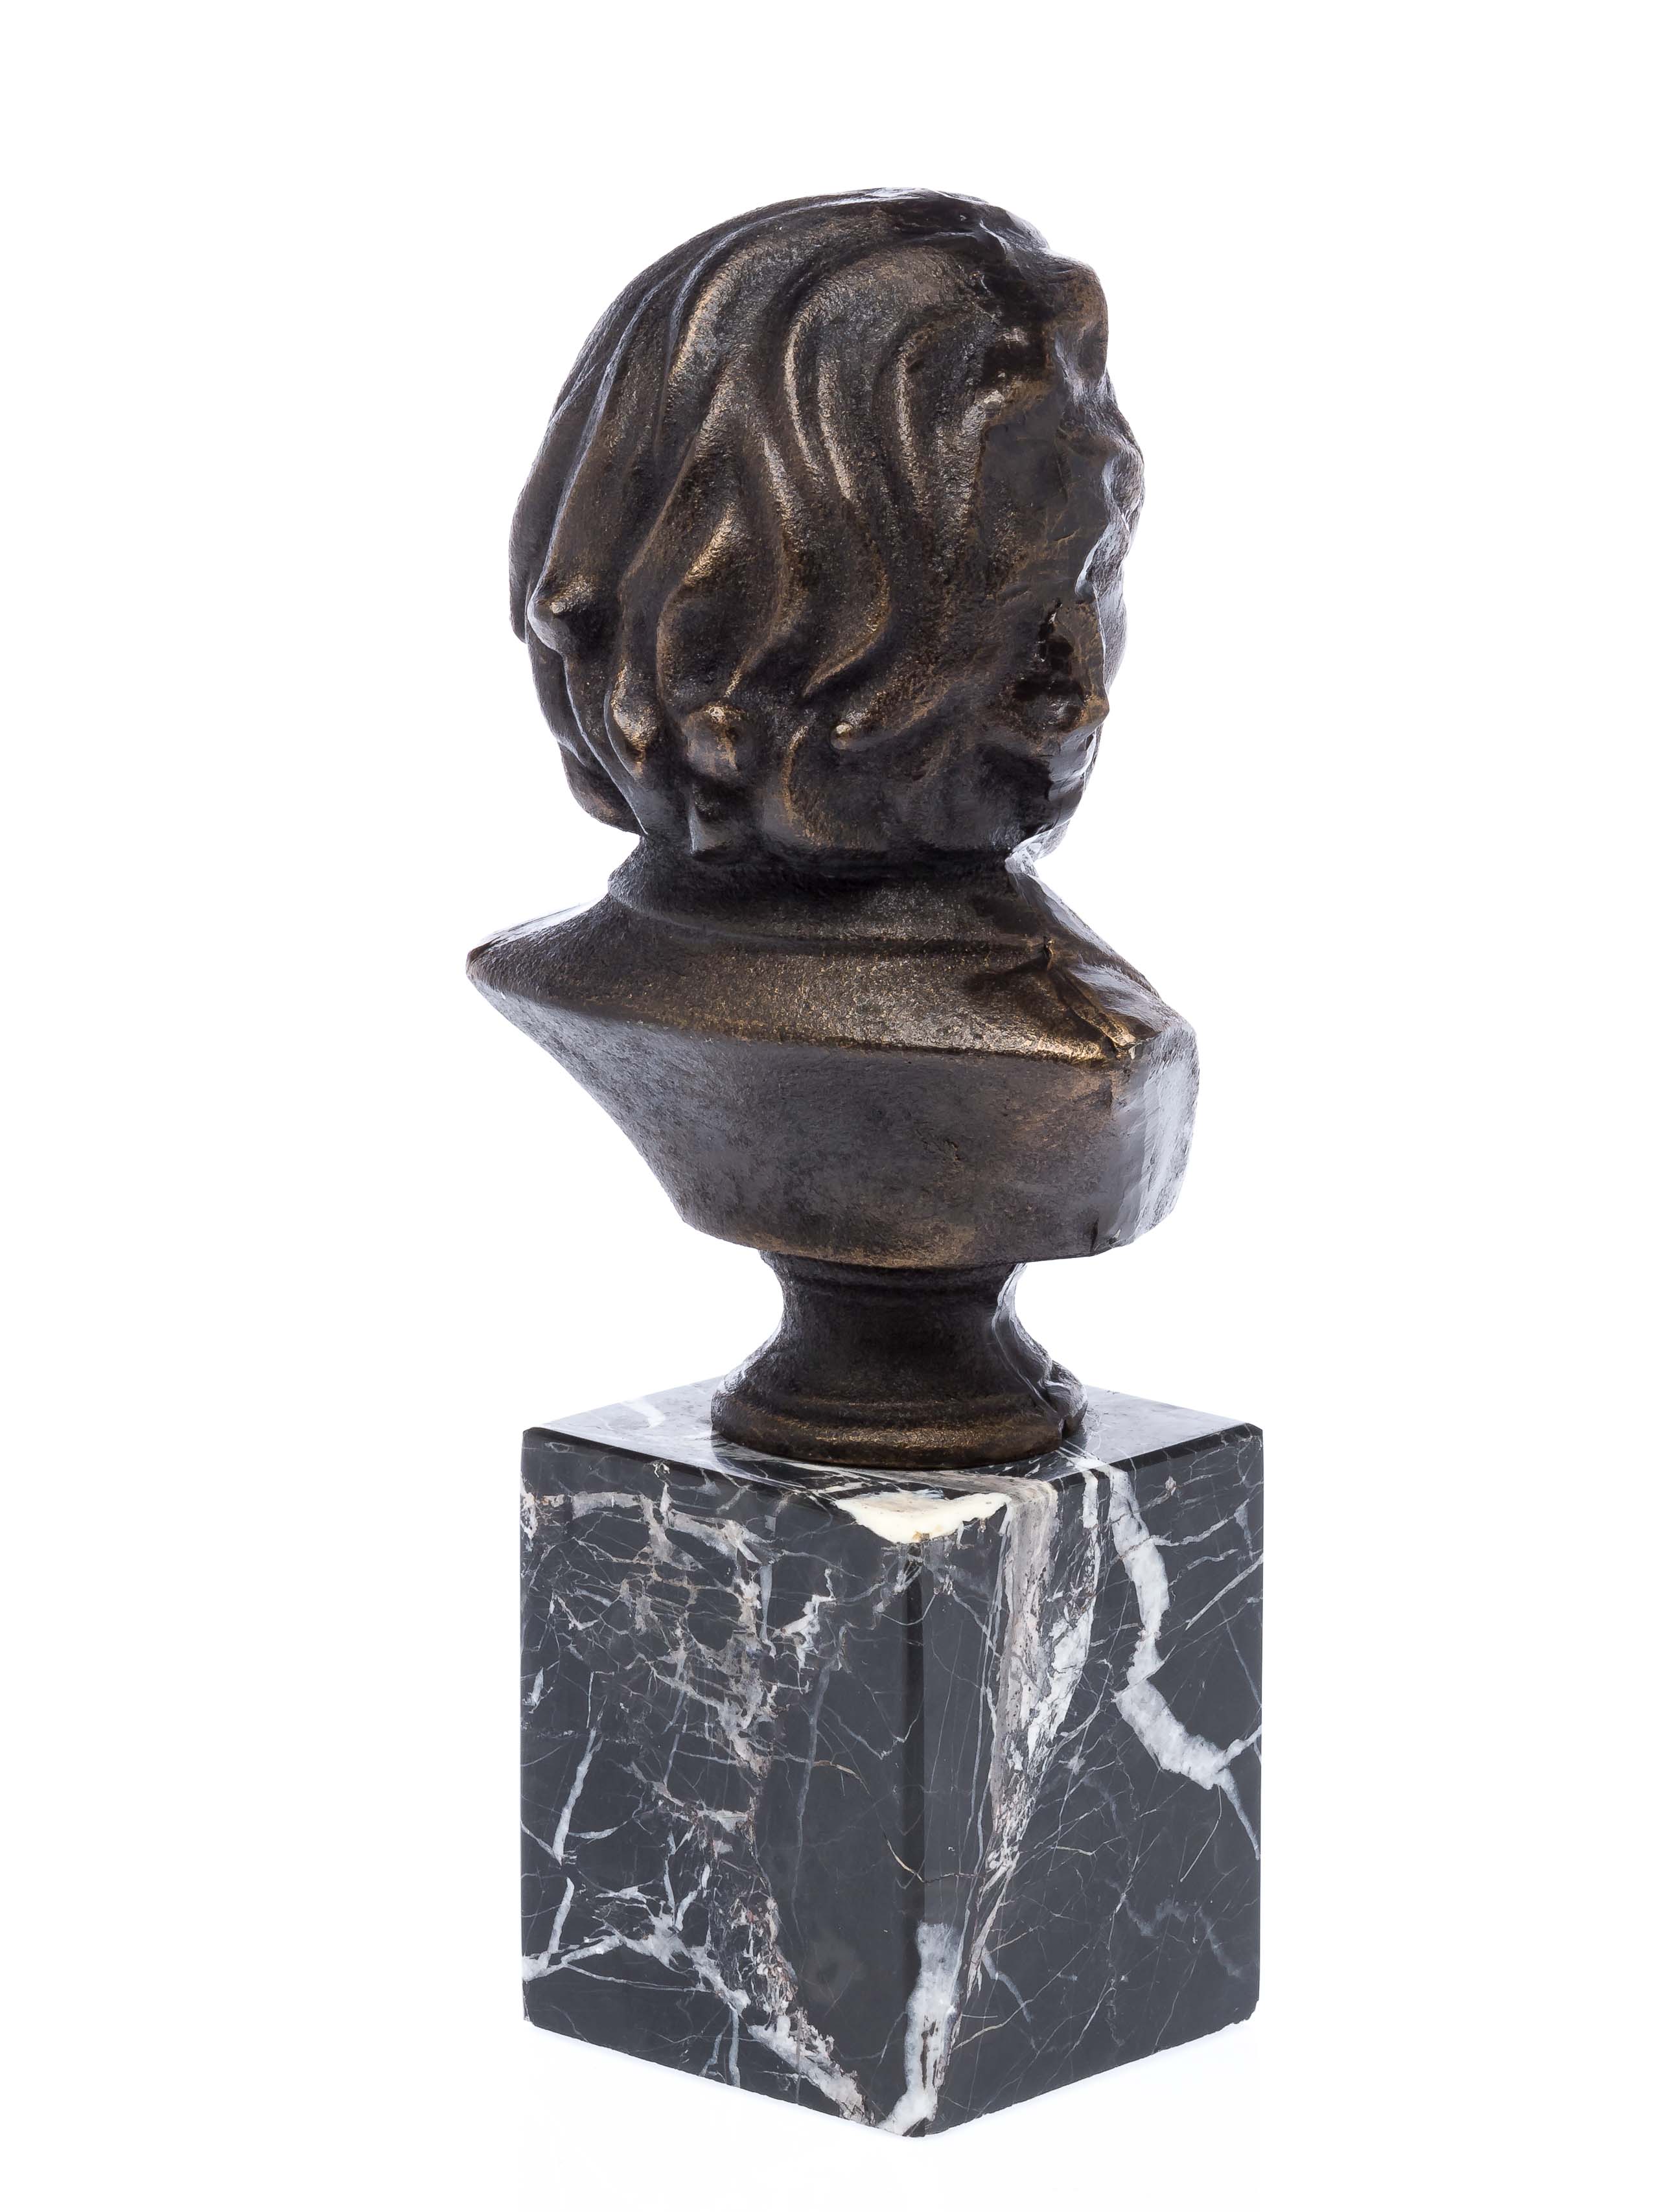 Gusseiserne Büste Albert Einstein Eisen Figur Skulptur sculpture iron bust 